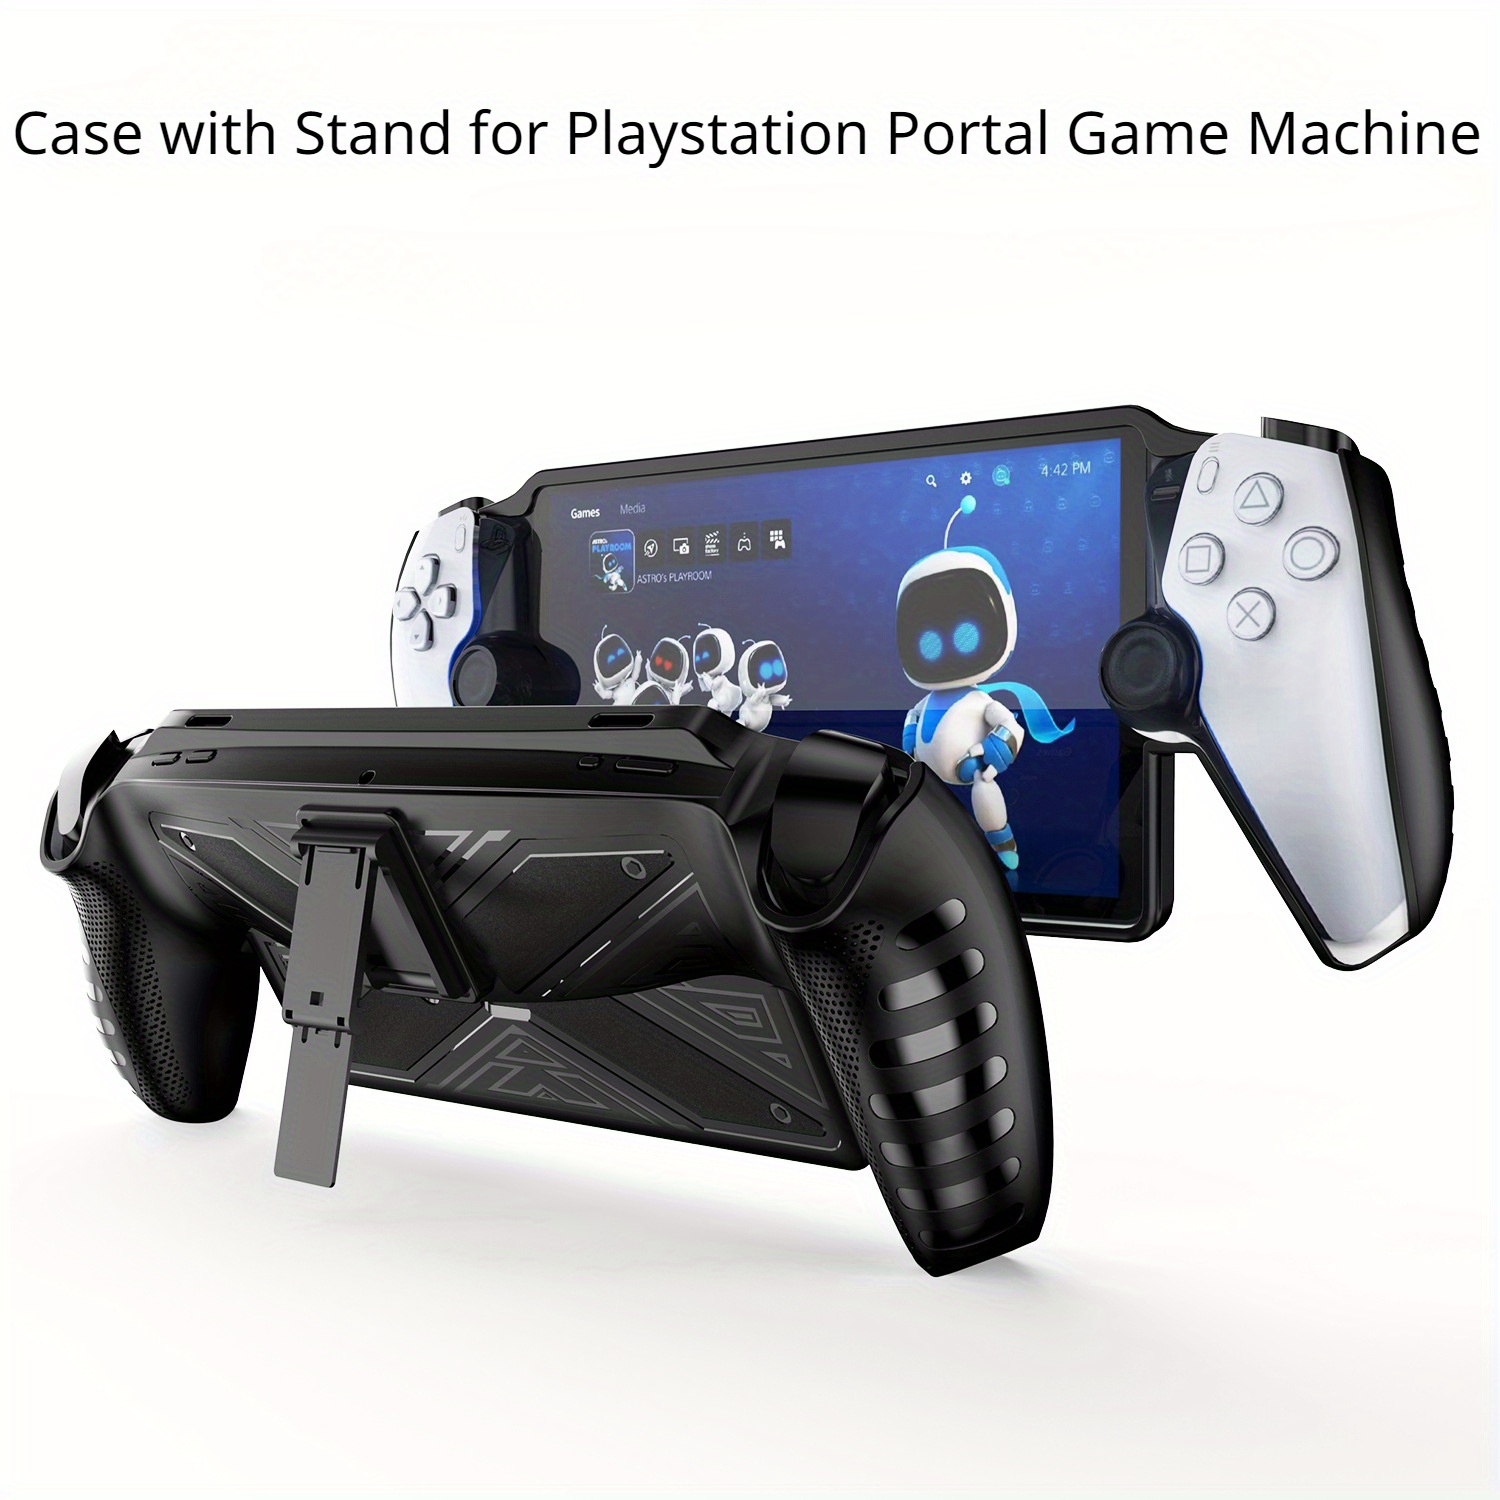 Para estuche Ps Portal, funda protectora Reproductor remoto Playstation  Portal compatible con soporte, para accesorios Ps Portal